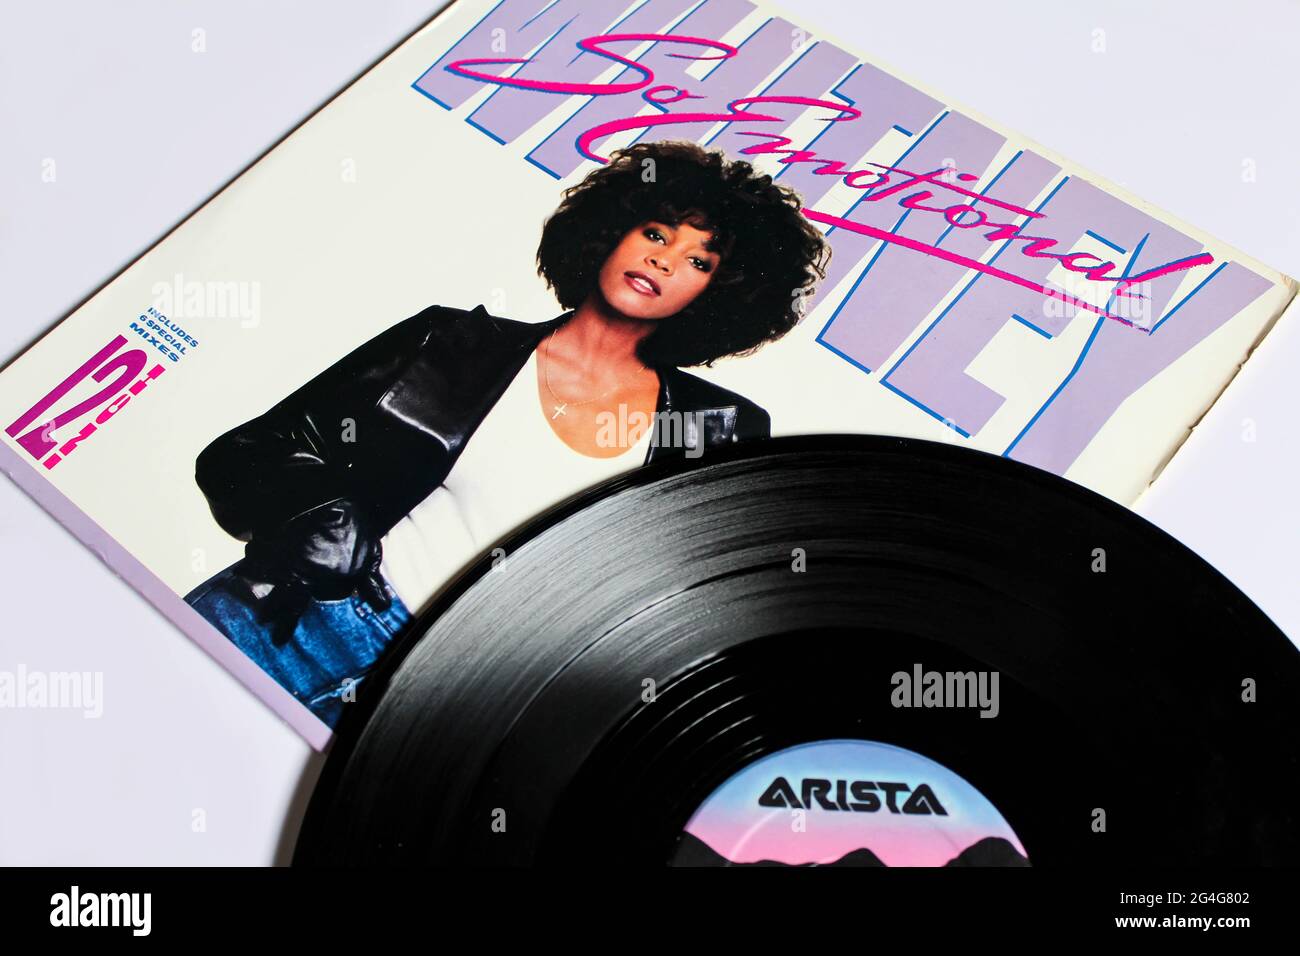 Dance-Rock, RnB und Pop-Künstler, Whitney Houston Musikalbum auf Vinyl-Schallplatte. Titel: So emotionales Album-Cover Stockfoto